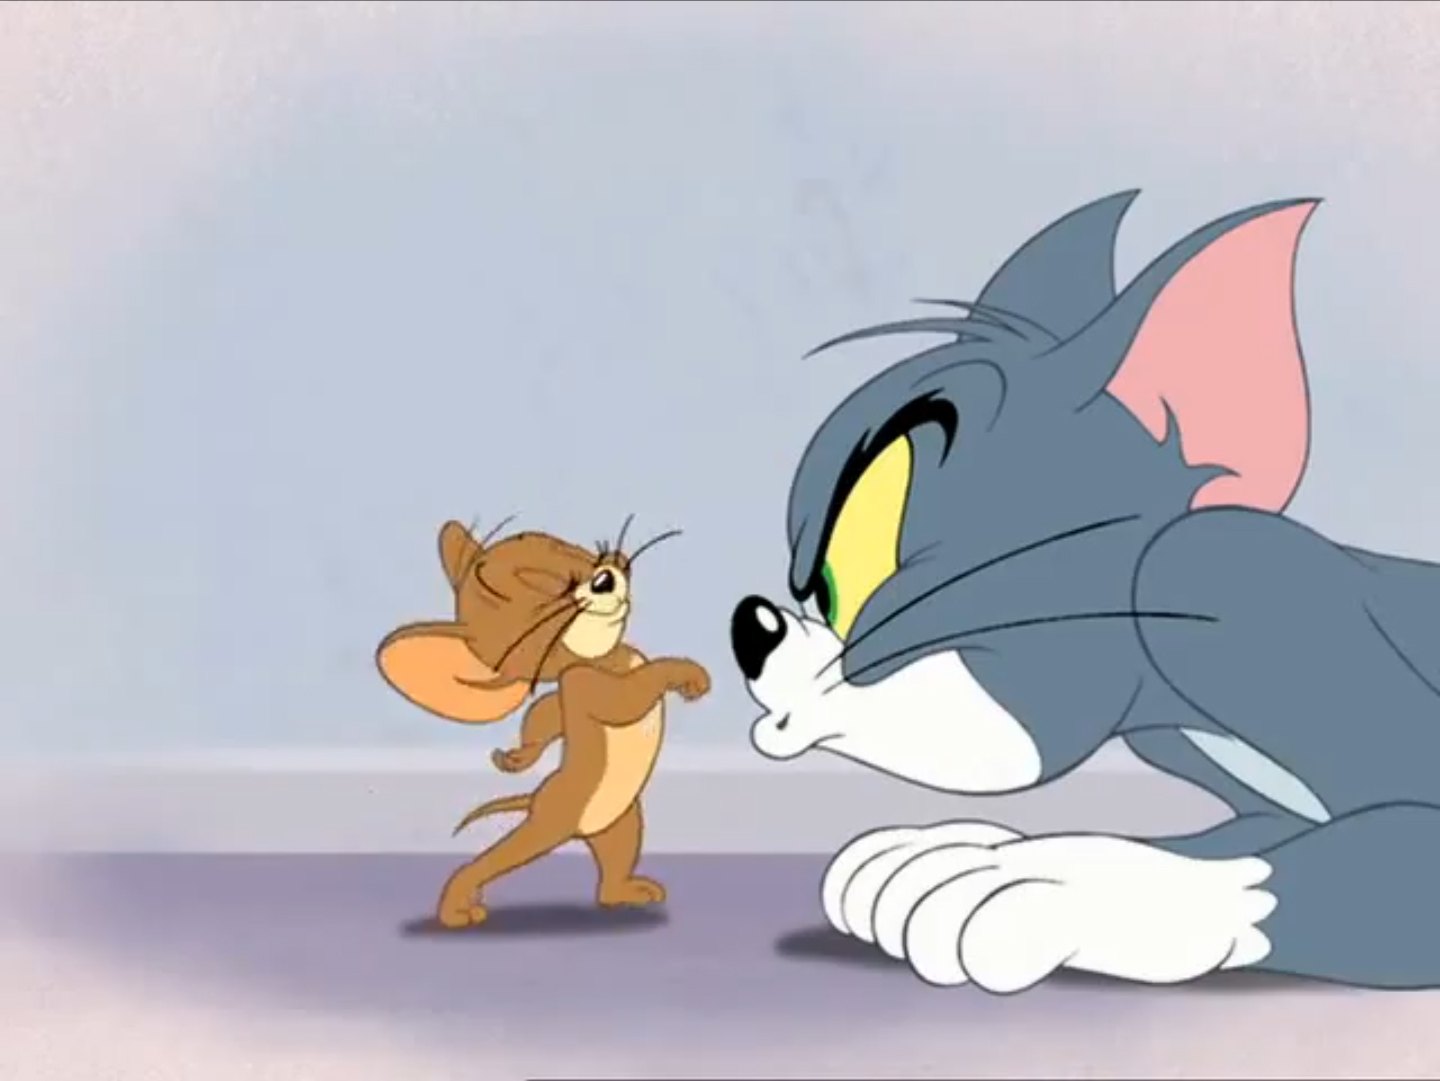 Том и джерри живут. Том и Джерри Tom and Jerry. Том и Джерри Дисней. Том и Джерри (Tom and Jerry) 1940.